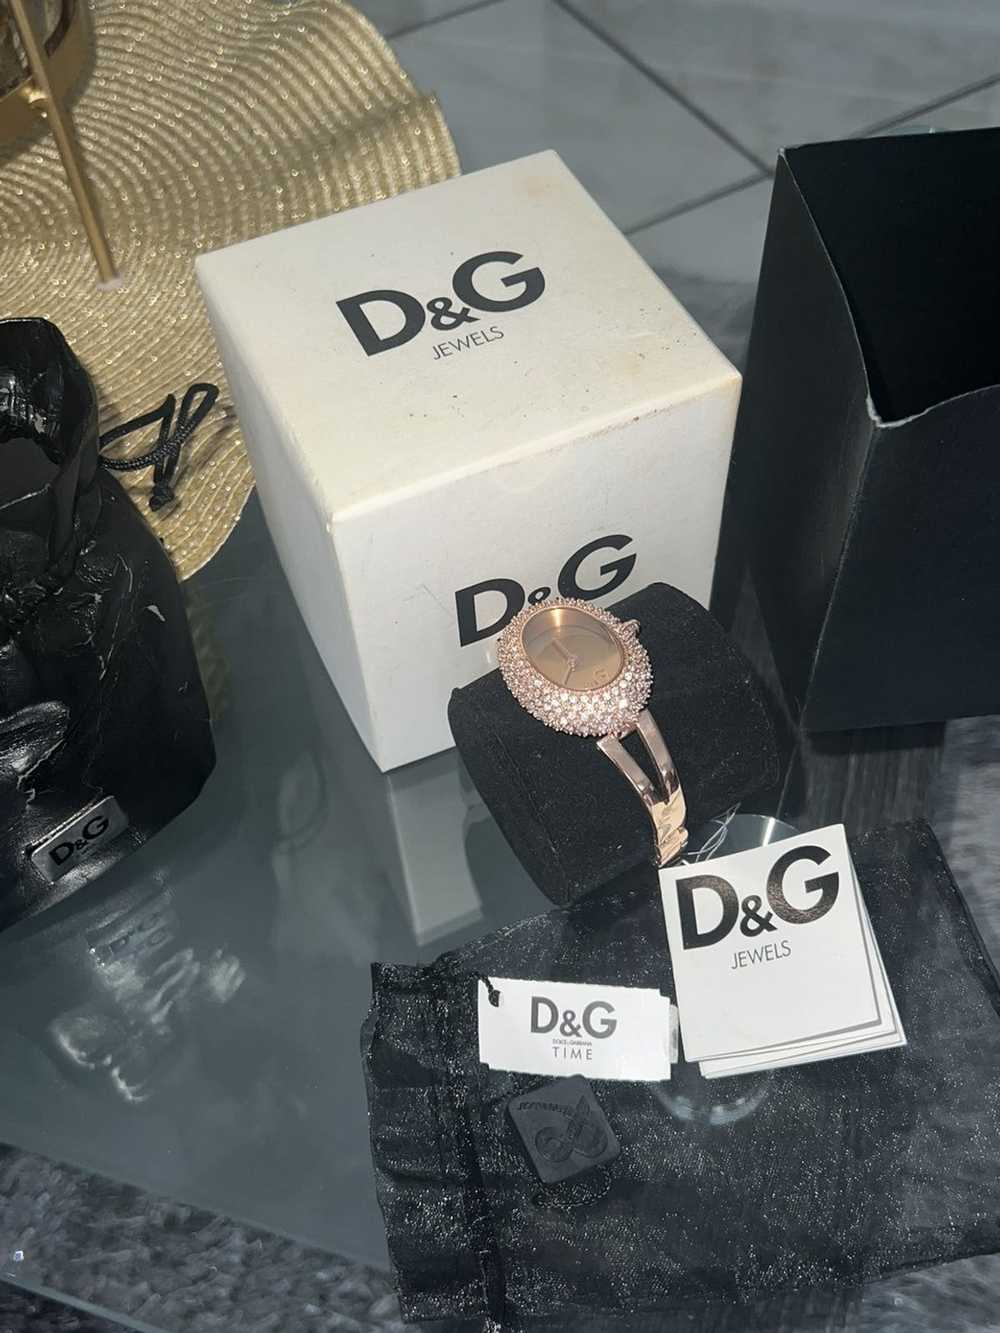 Dolce & Gabbana Woman’s Dolice & Gabana watch - image 2